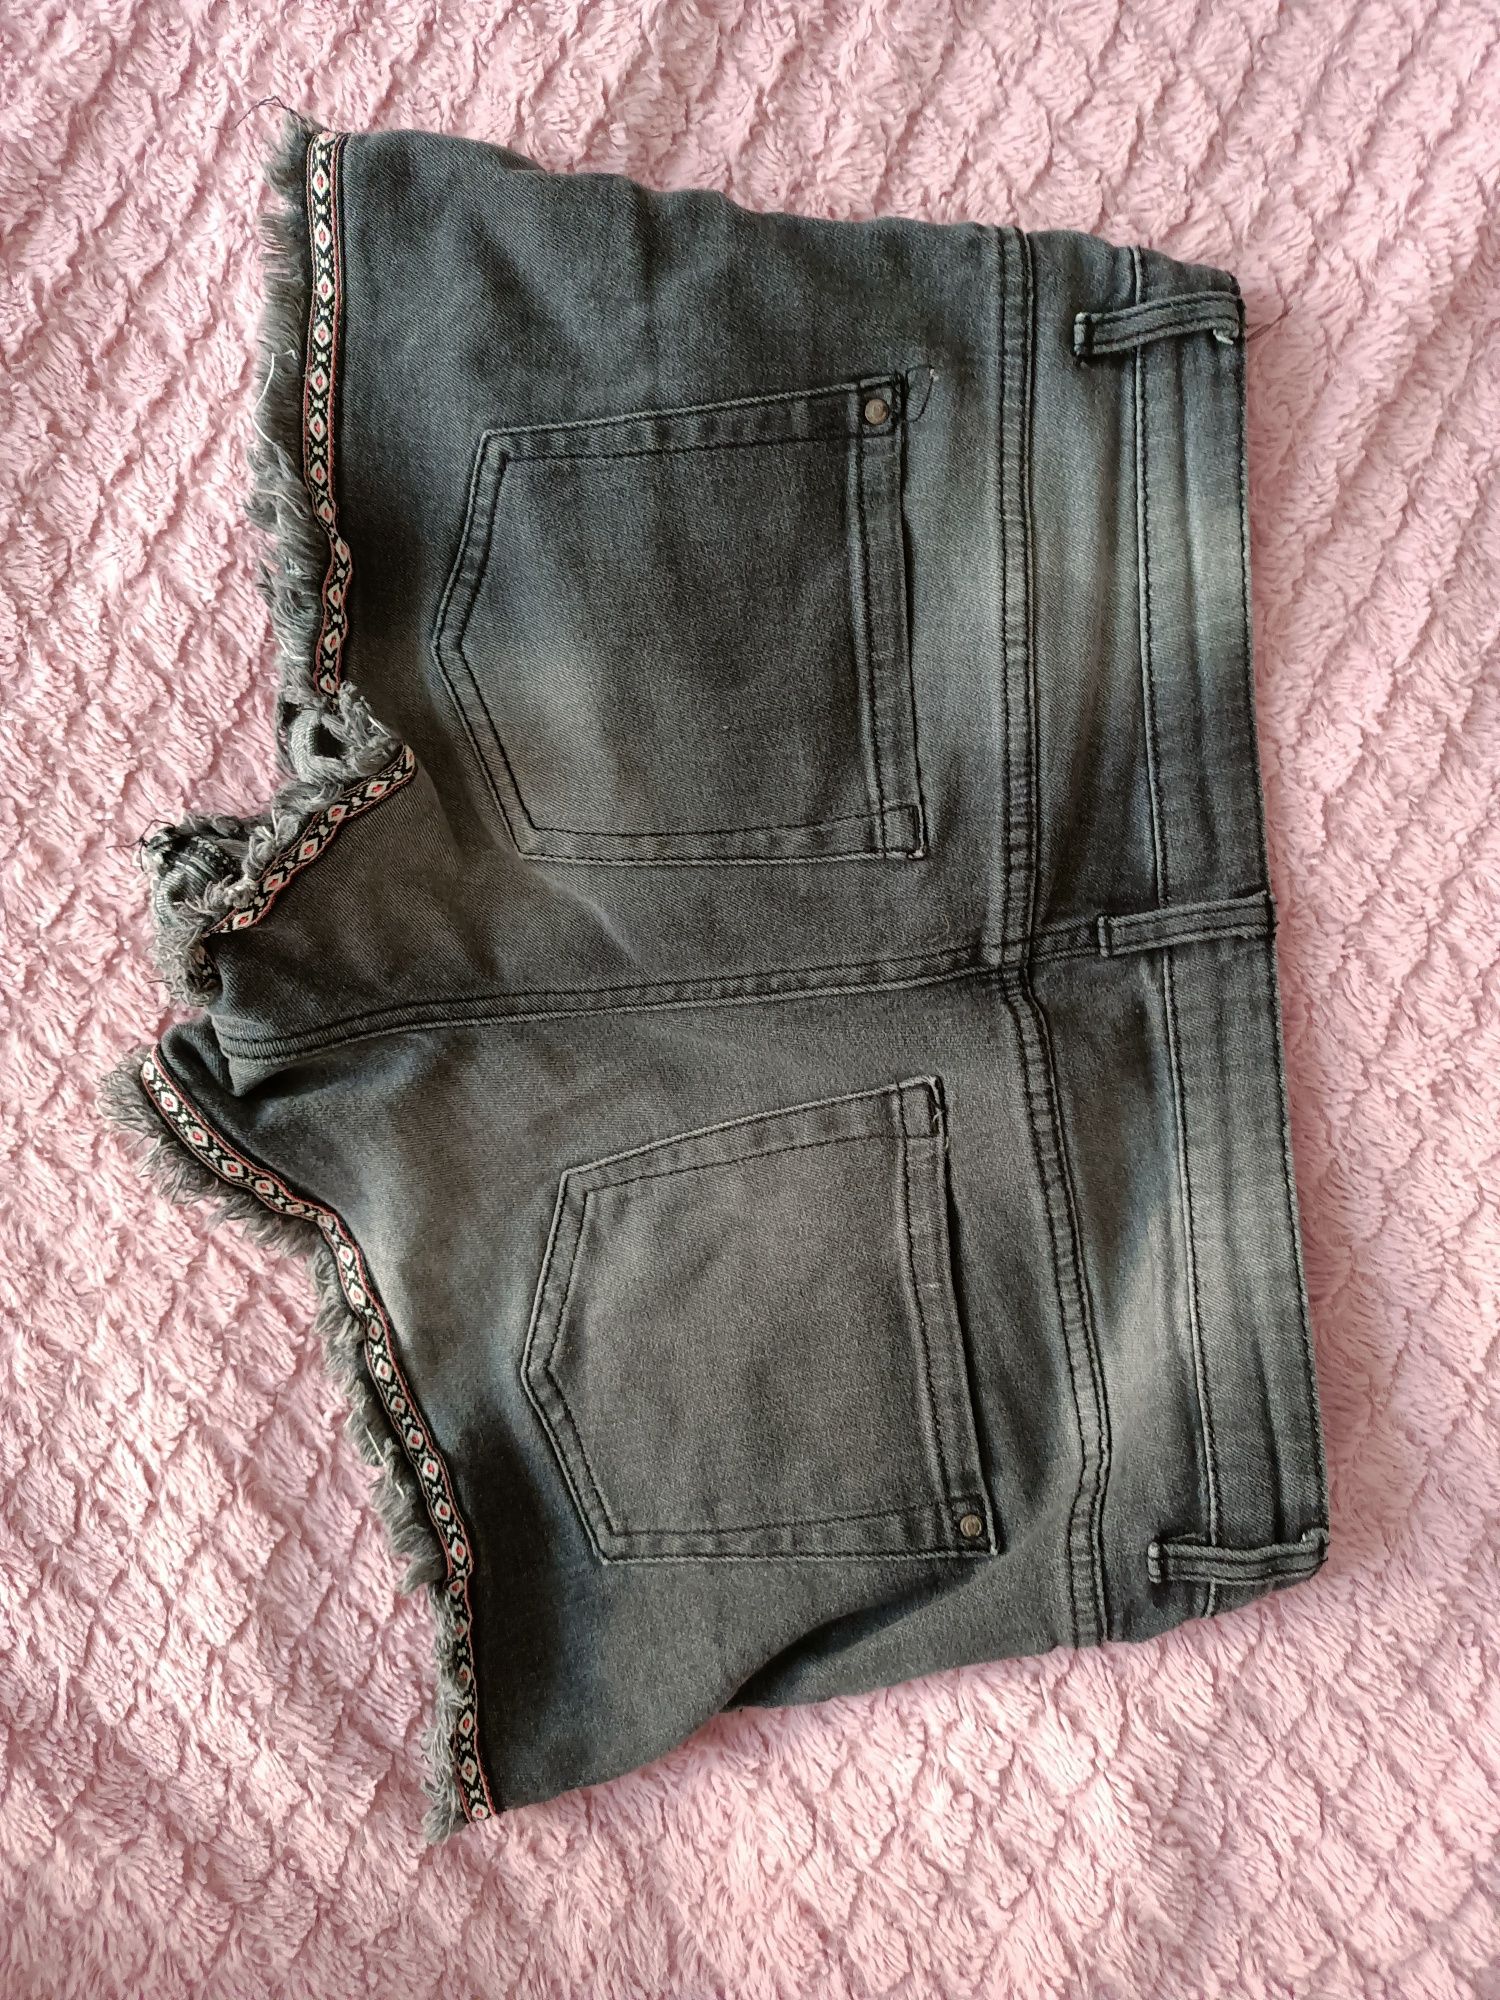 Spodenki spodnie szorty dżinsowe Boho esmara 40